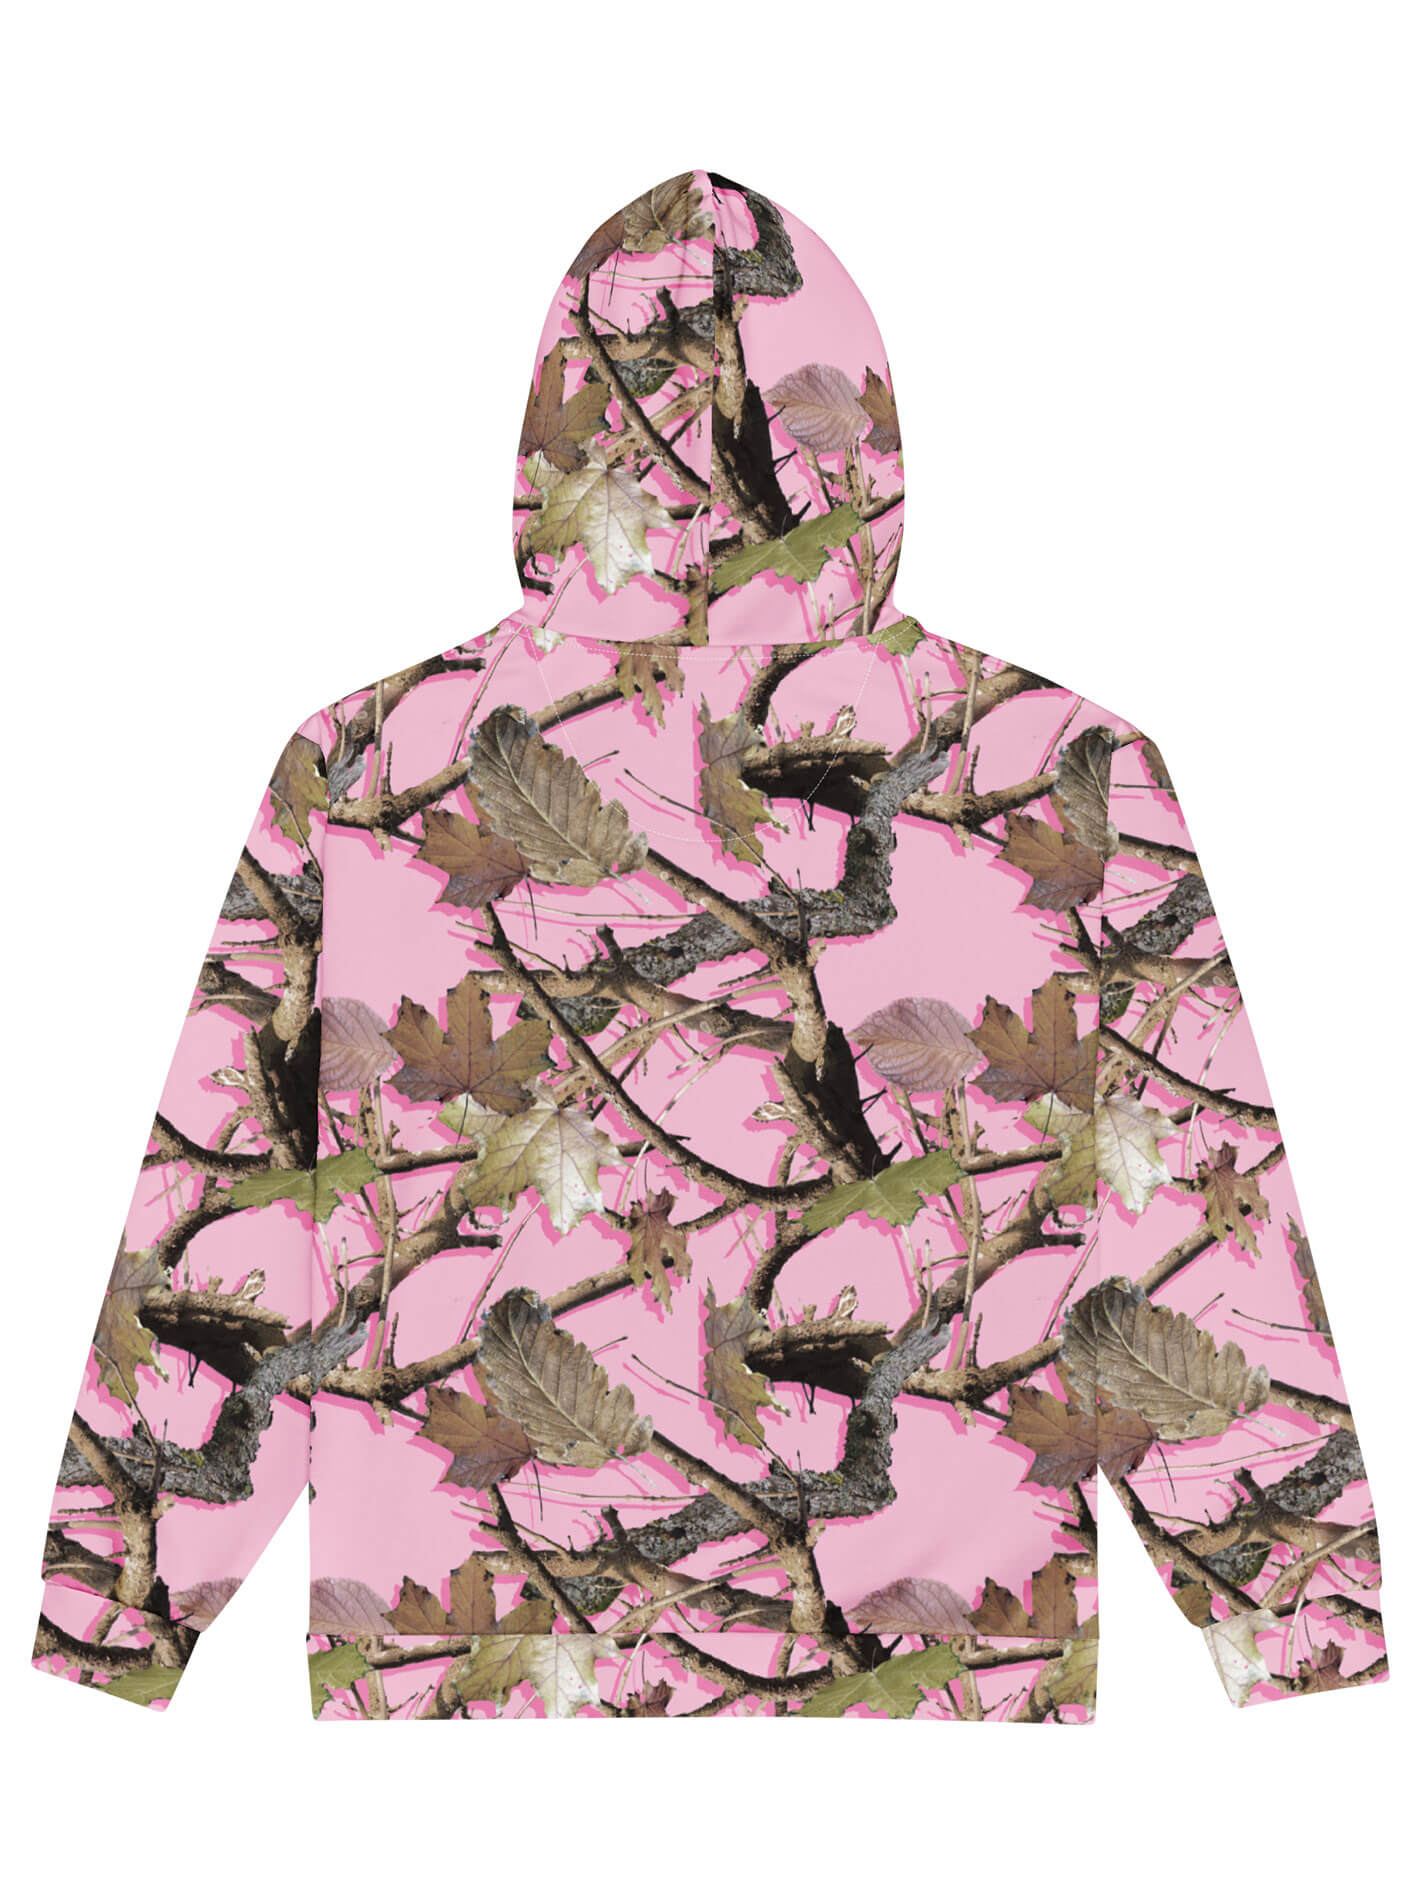 Pink camo plus size zip up hoodie.